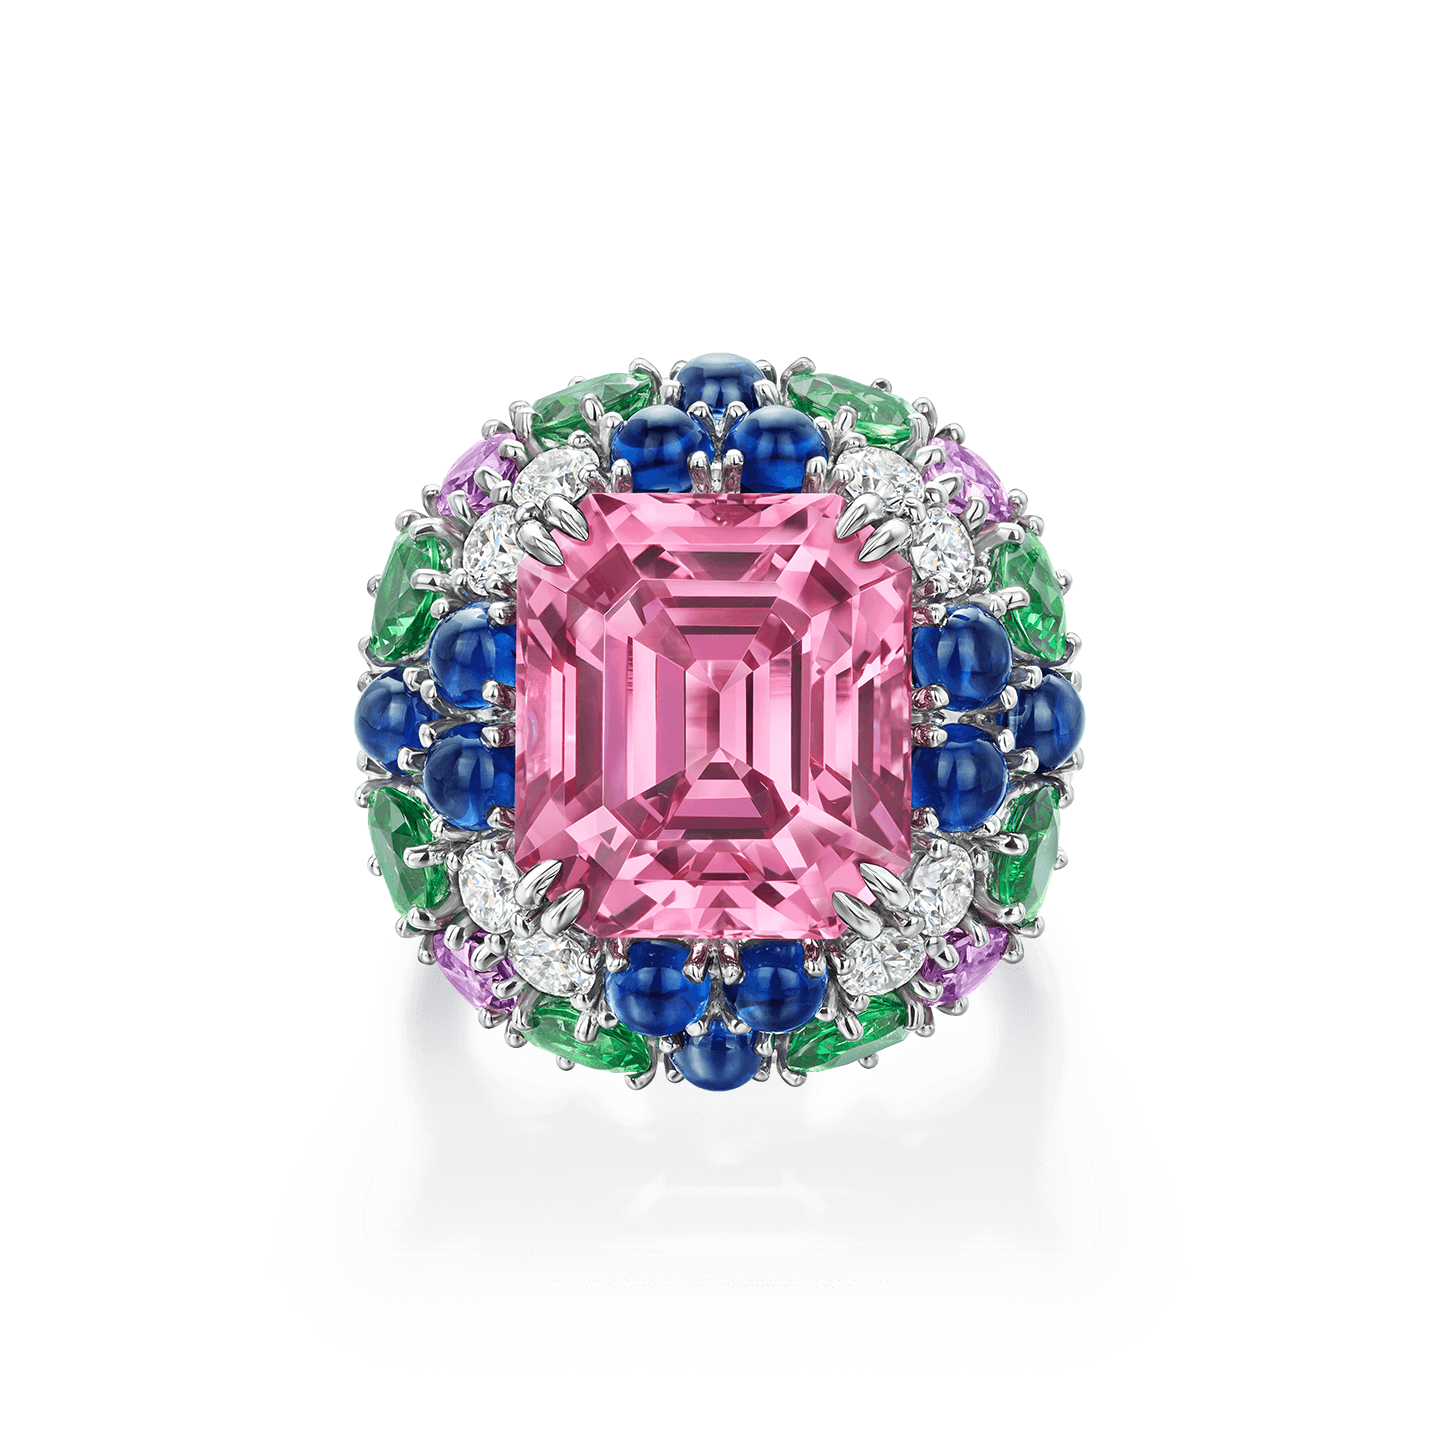 Bague Winston Candy en spinelle rose pourpre avec des saphirs, grenats tsavorite et diamants